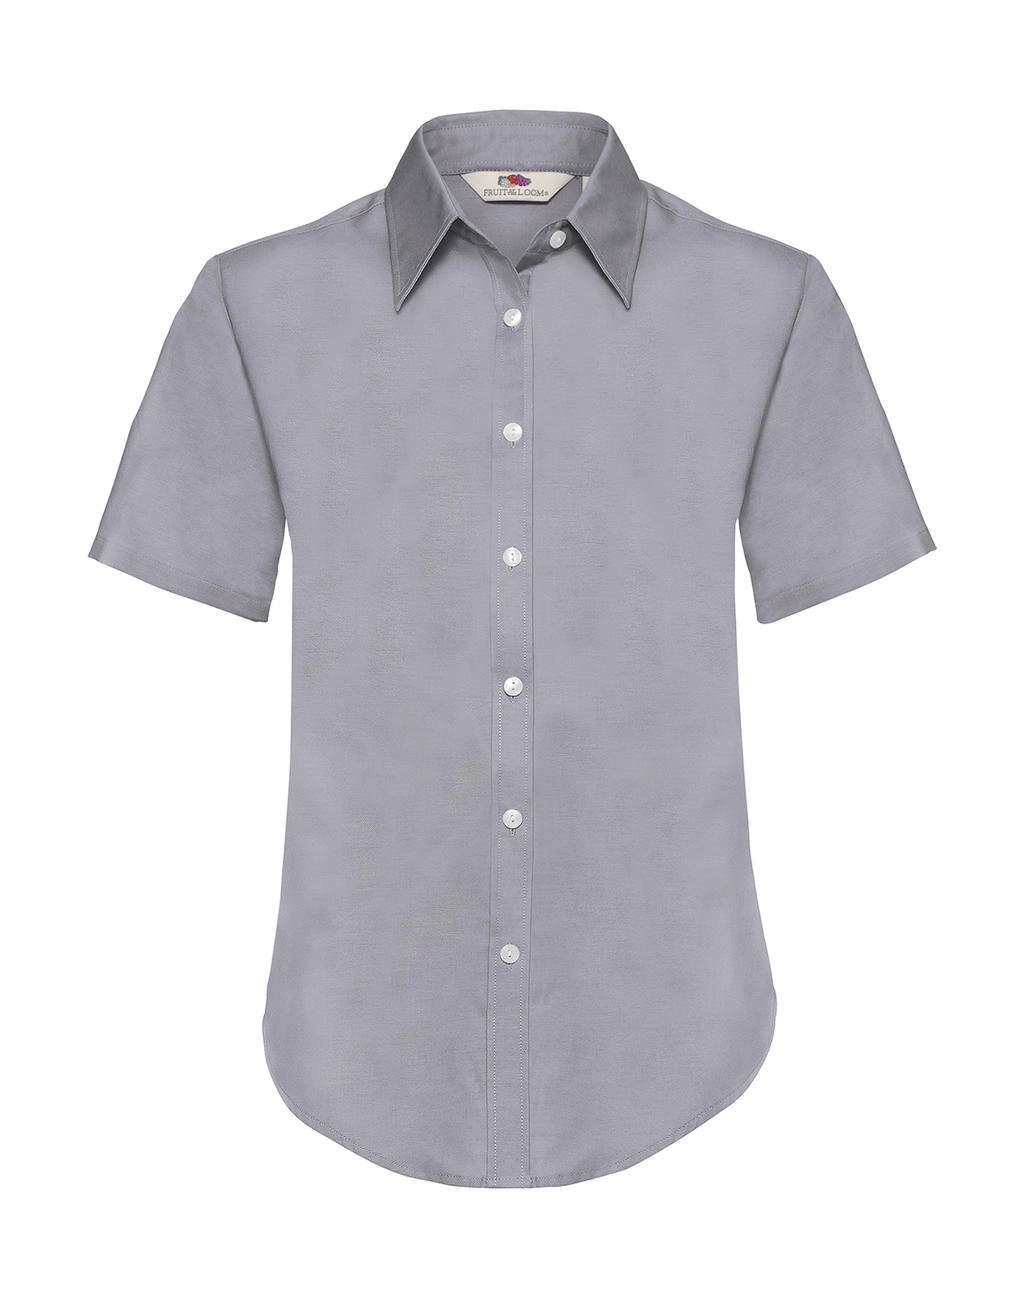 Ladies Oxford Shirt zum Besticken und Bedrucken in der Farbe Oxford Grey mit Ihren Logo, Schriftzug oder Motiv.